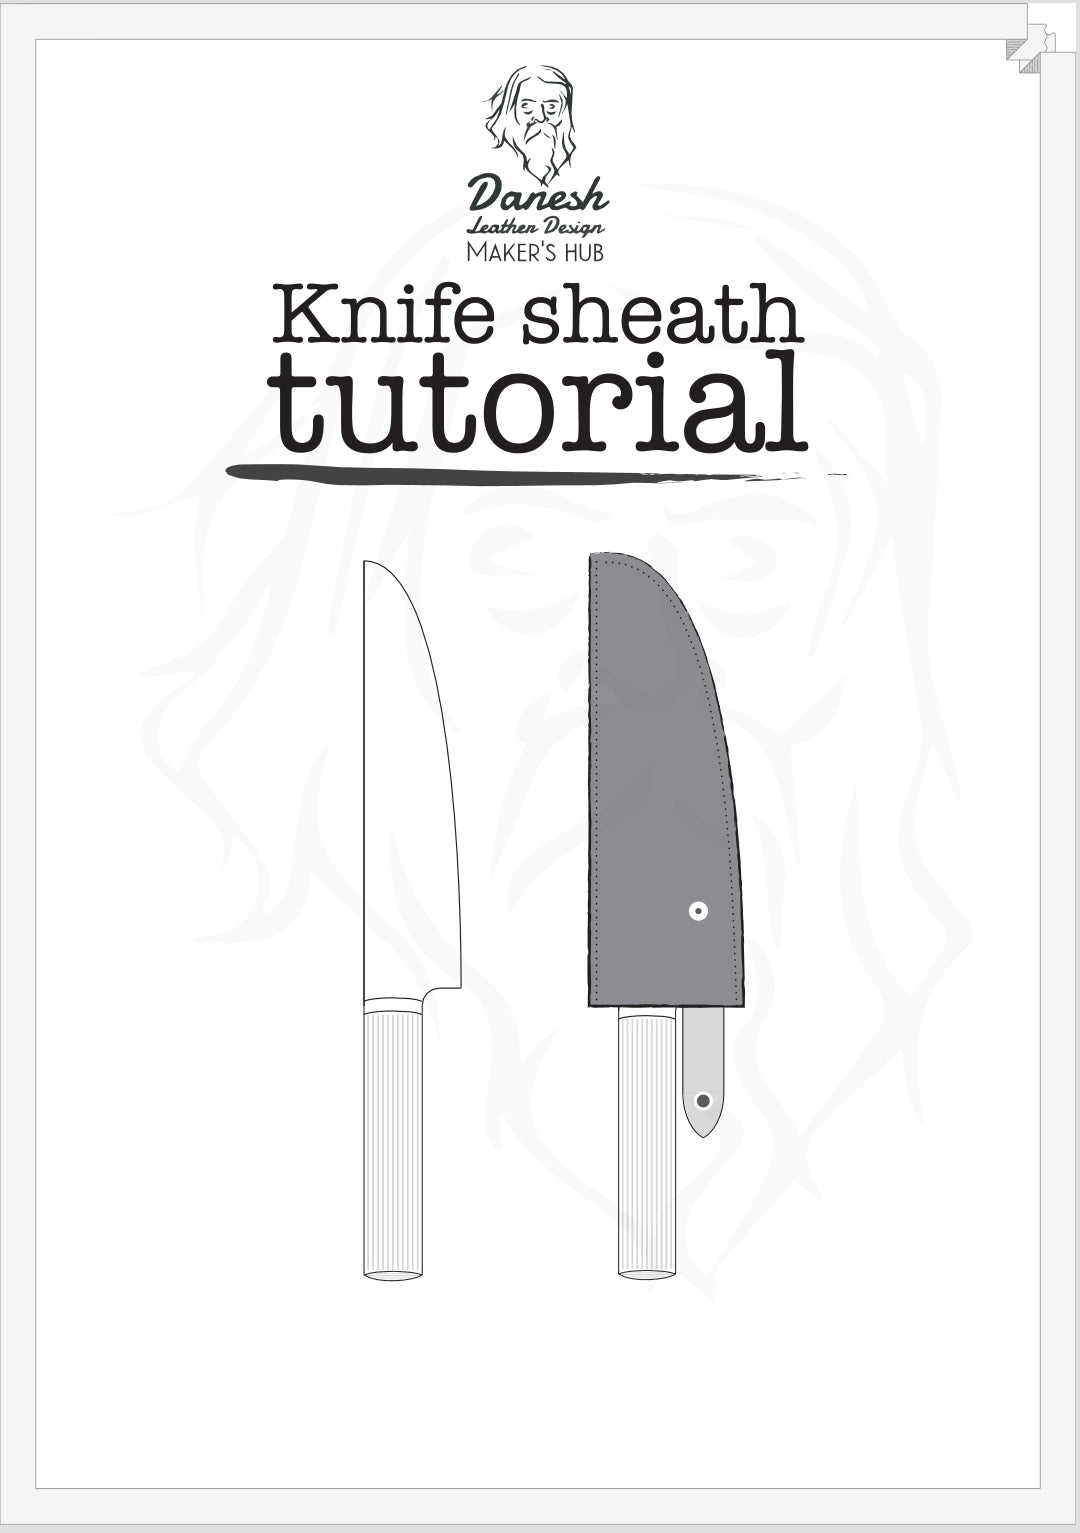 Knife sheath tutorial  - PDF guide - DIY